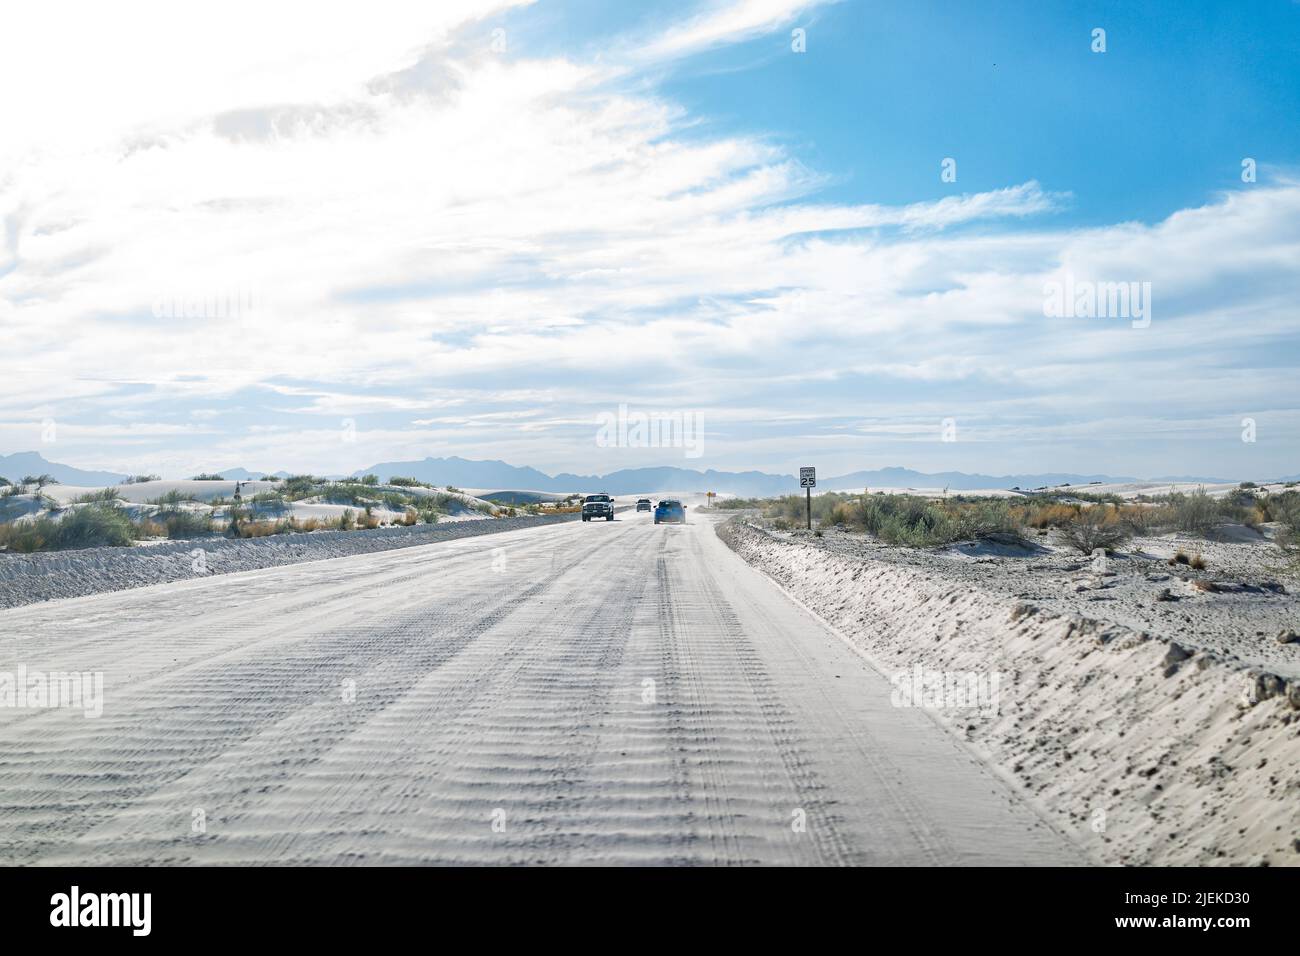 Monument national de sable blanc dunes route et voitures au Nouveau-Mexique conduite vers les aires de stationnement pour les sentiers de randonnée avec ciel bleu et nuages Banque D'Images